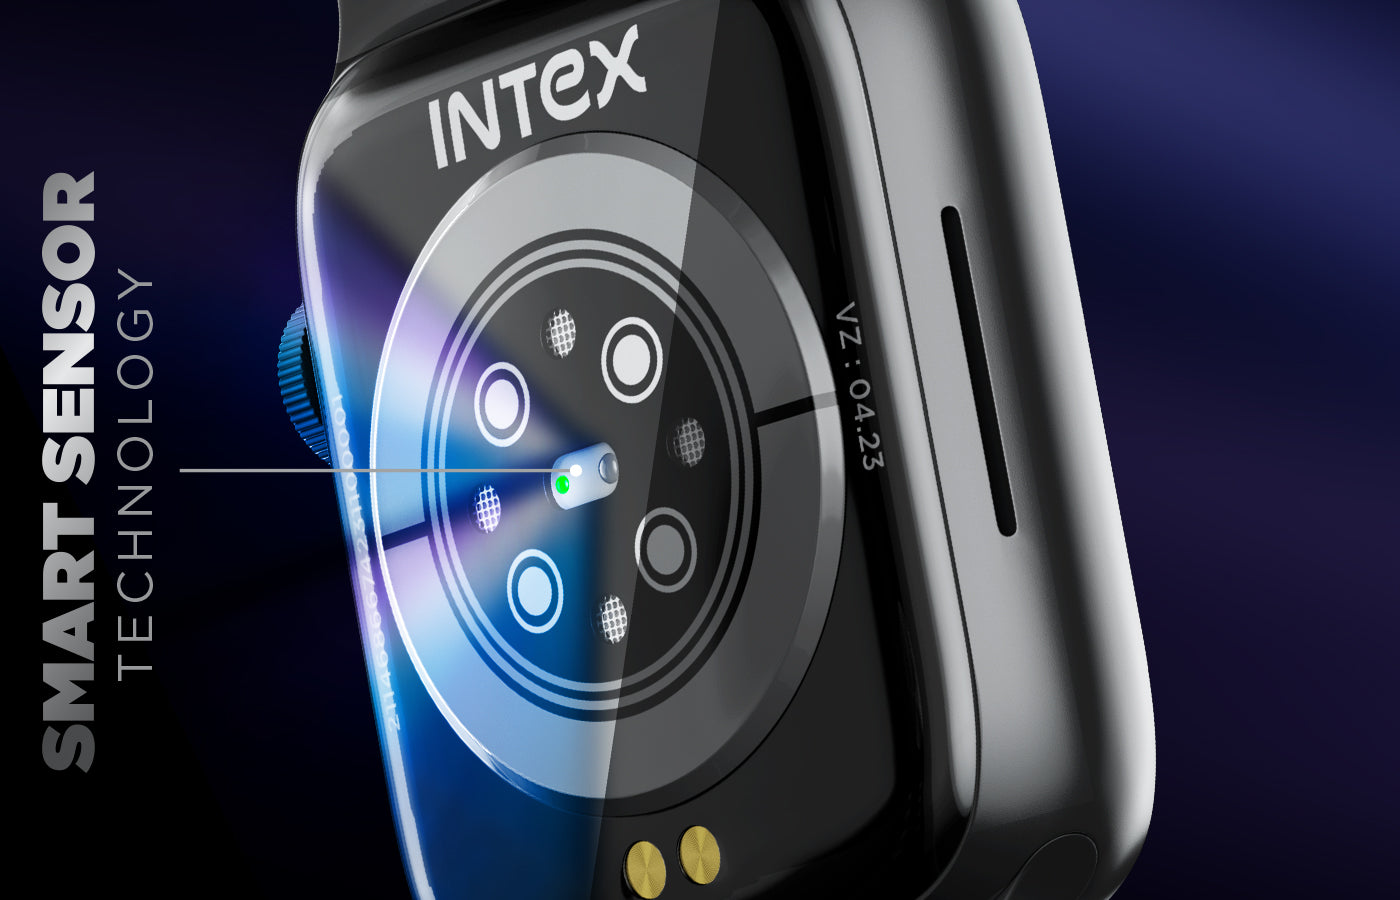 Intex iRist Smartwatch Price in India - Buy Intex iRist Smartwatch online  at Flipkart.com